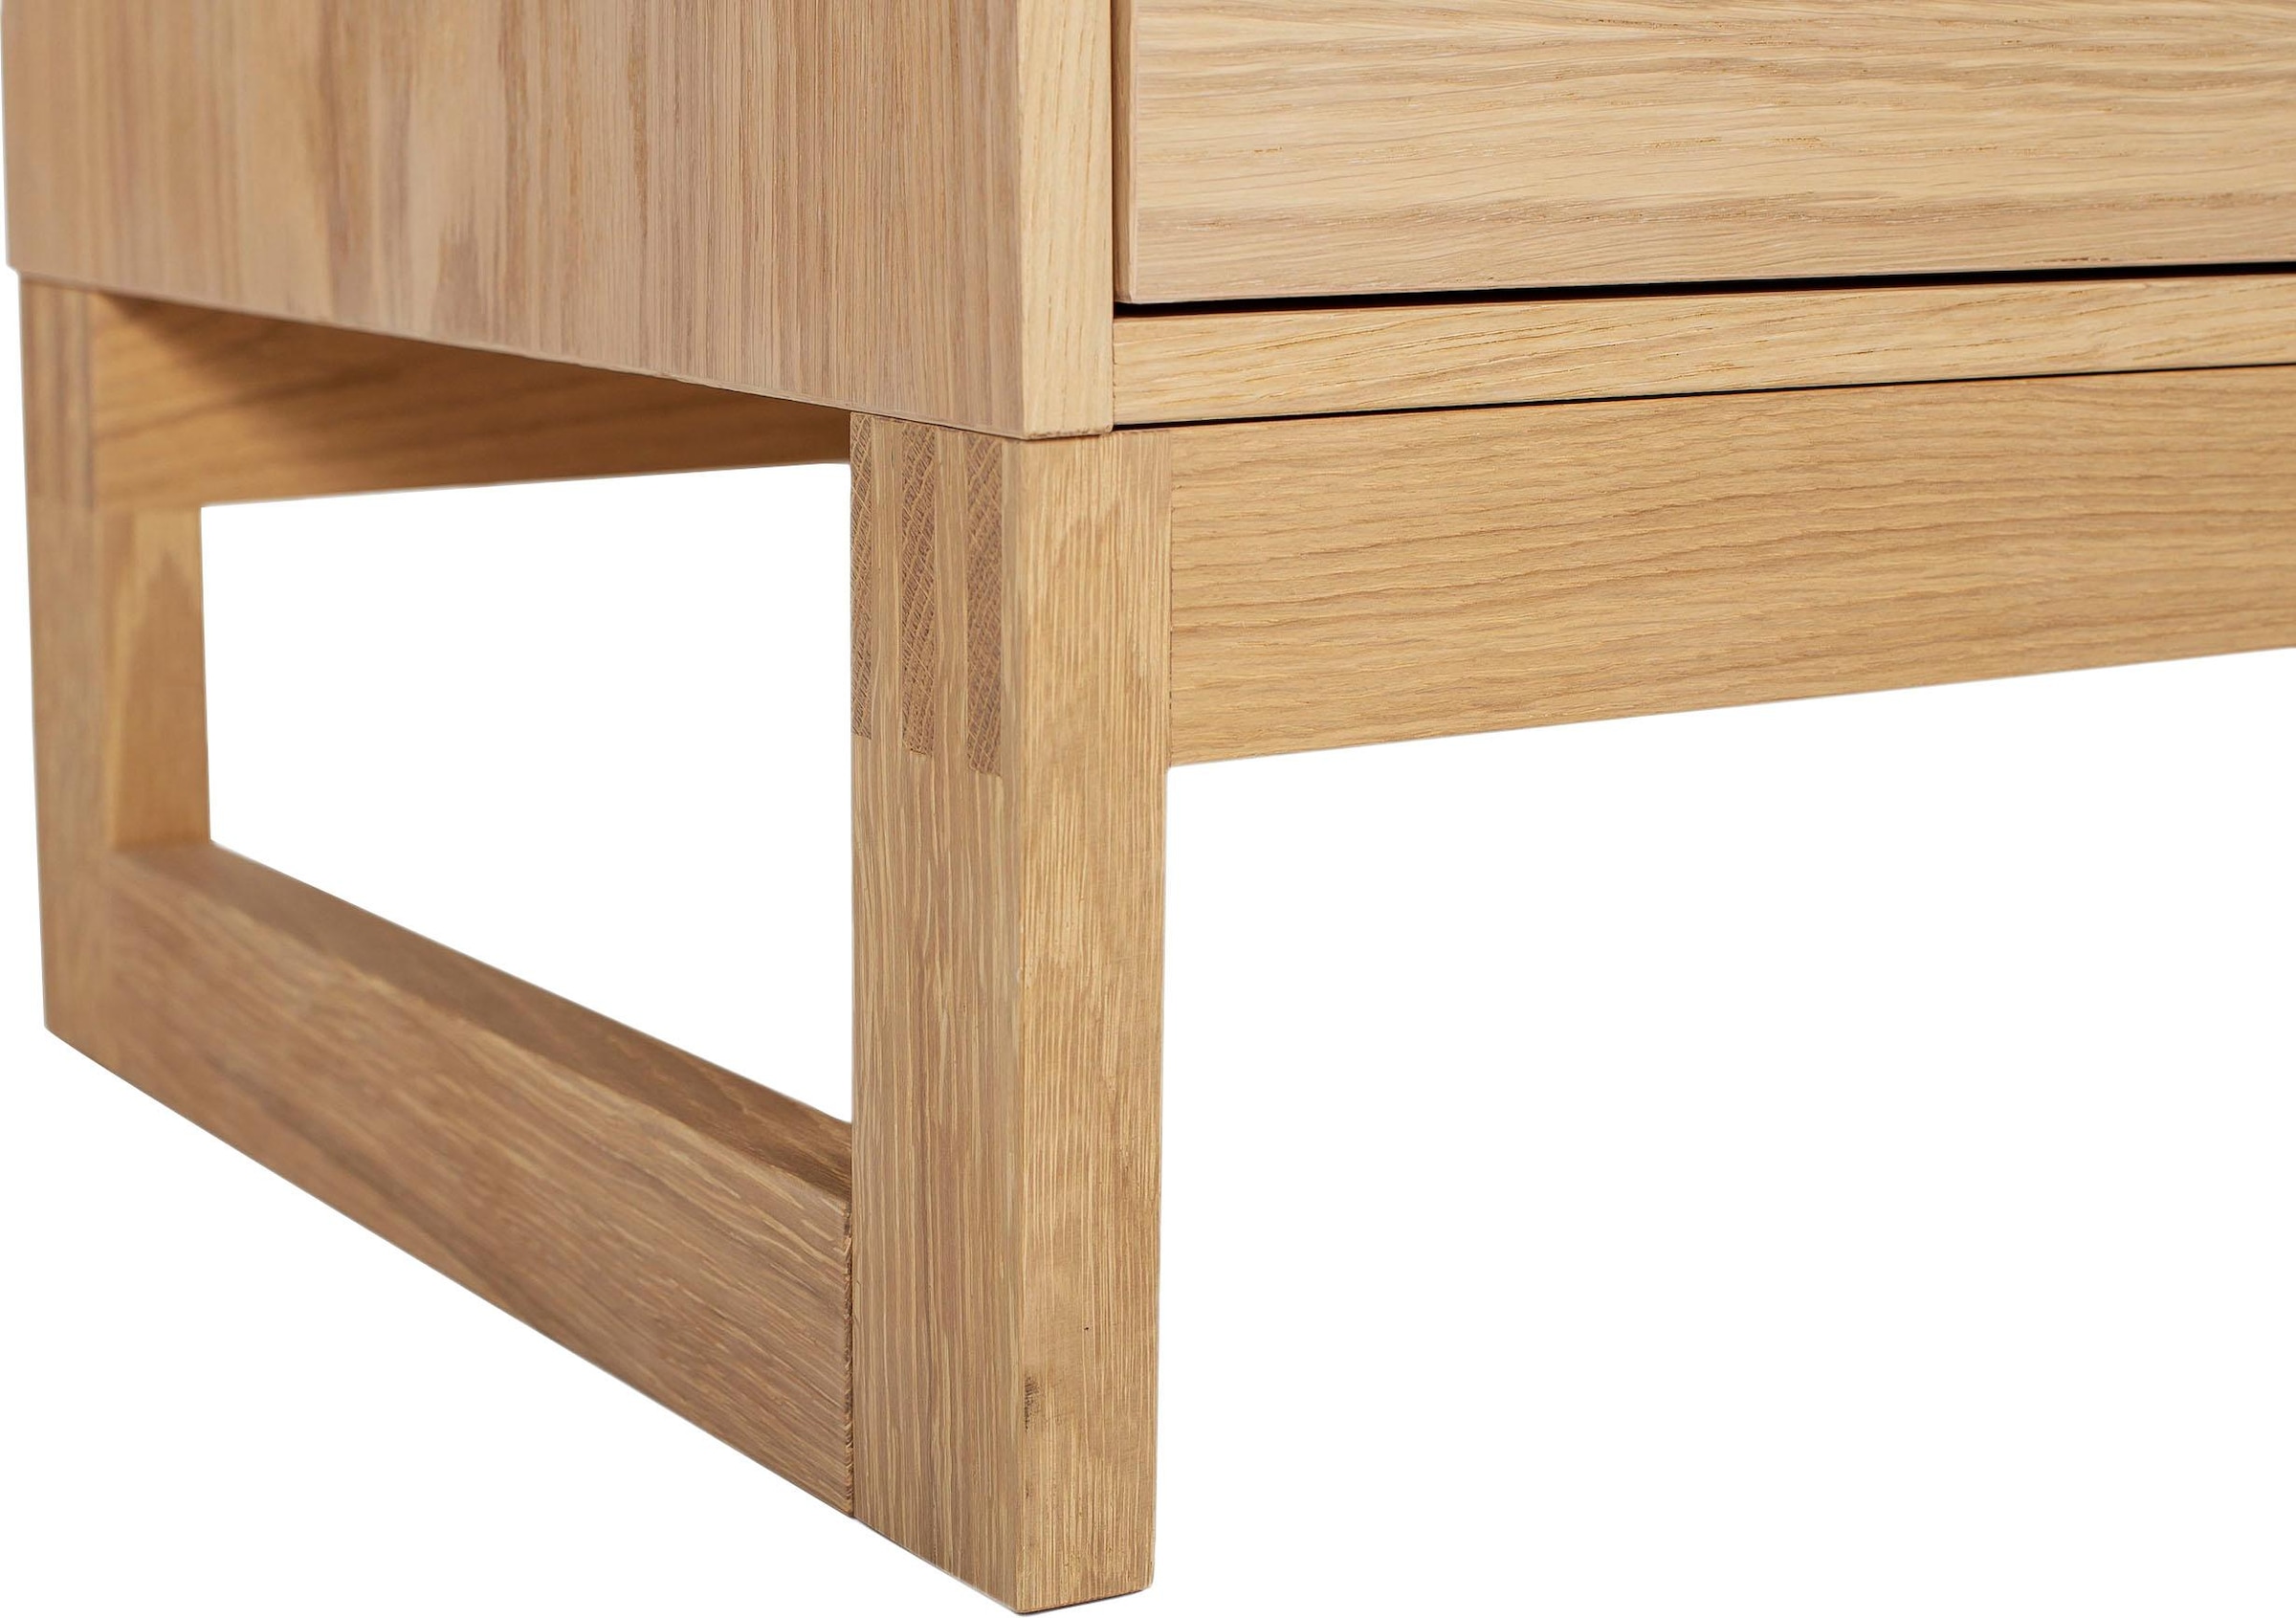 Woodman Schuhbank »Slussen«, im skandinavian Design, Holzfurnier aus Eiche